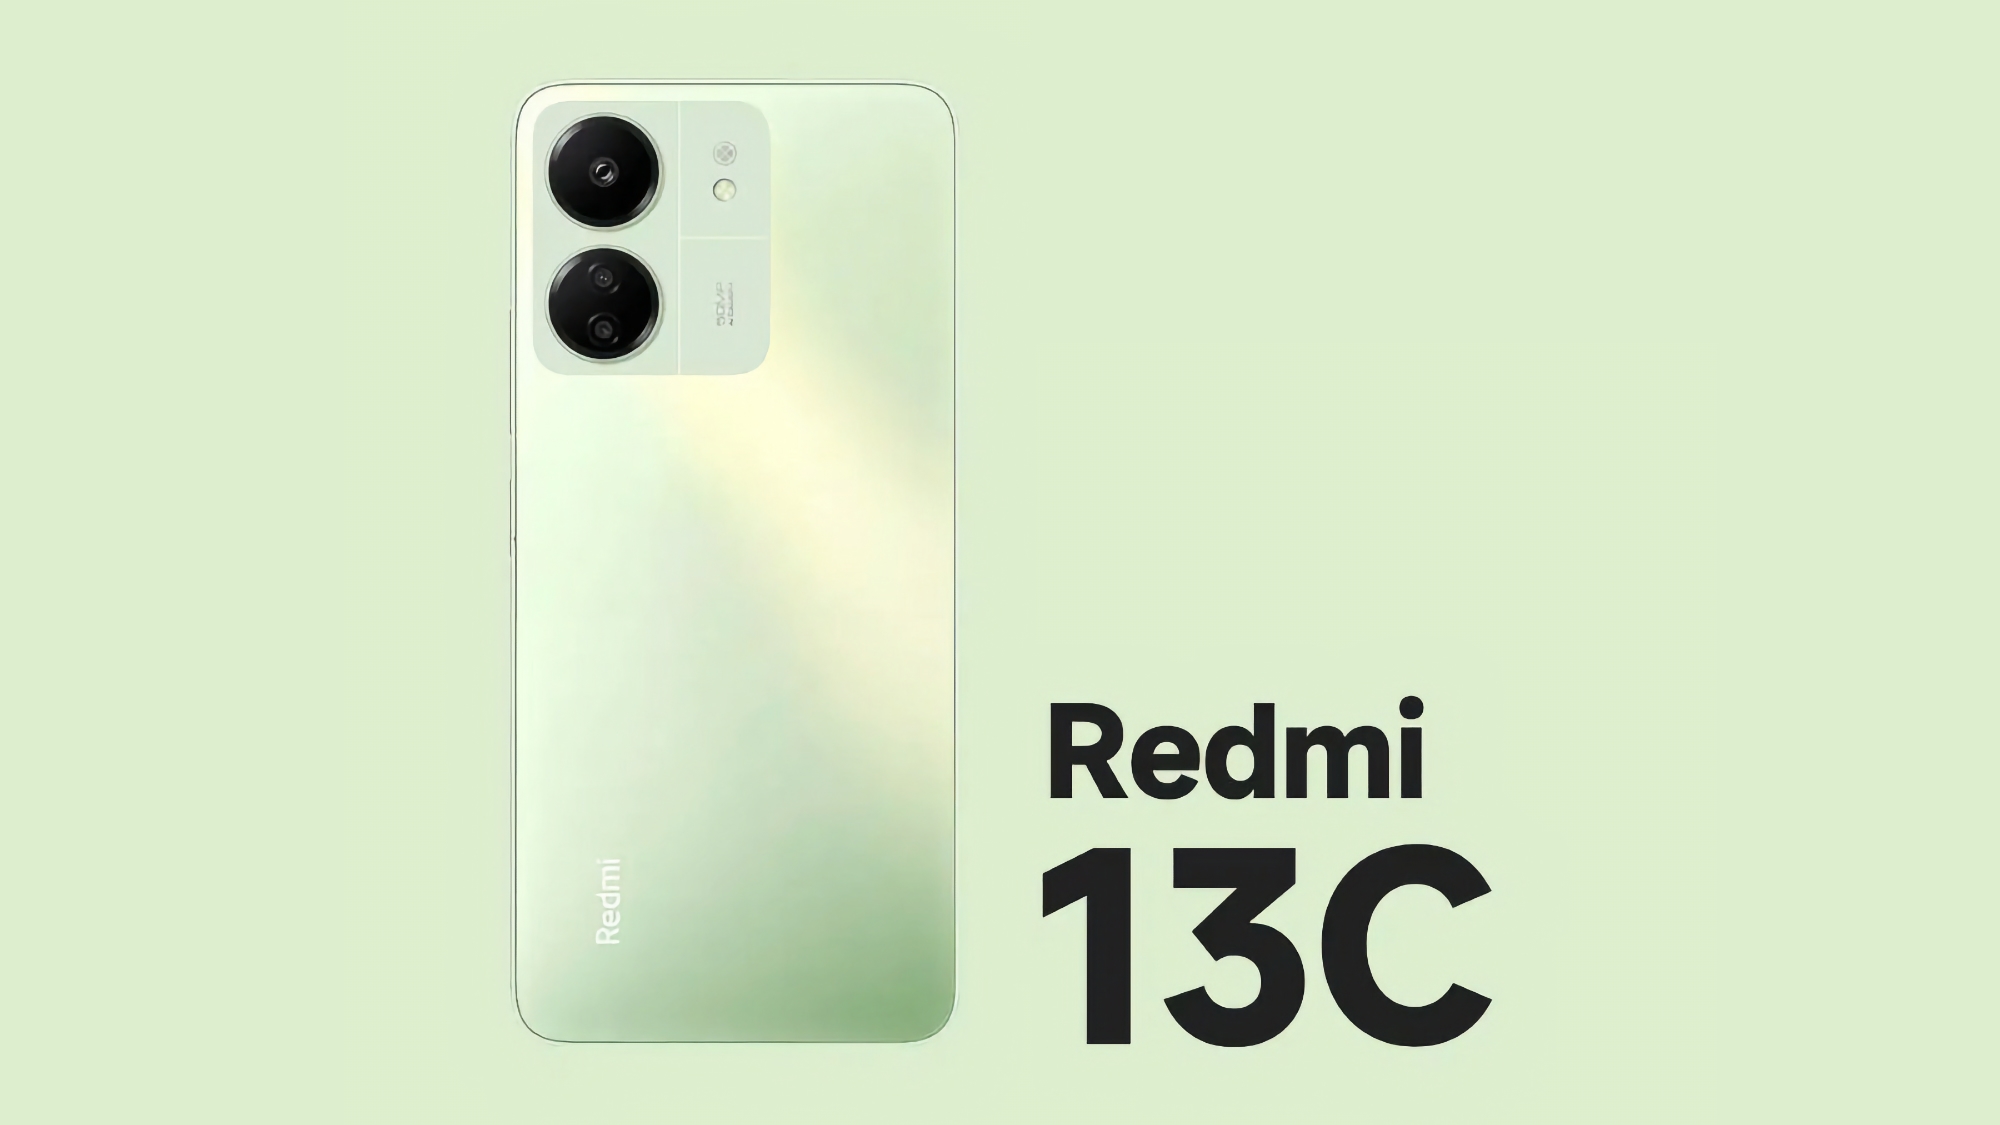 Annuncio vicino: Xiaomi ha iniziato il teaser dello smartphone economico Redmi 13C